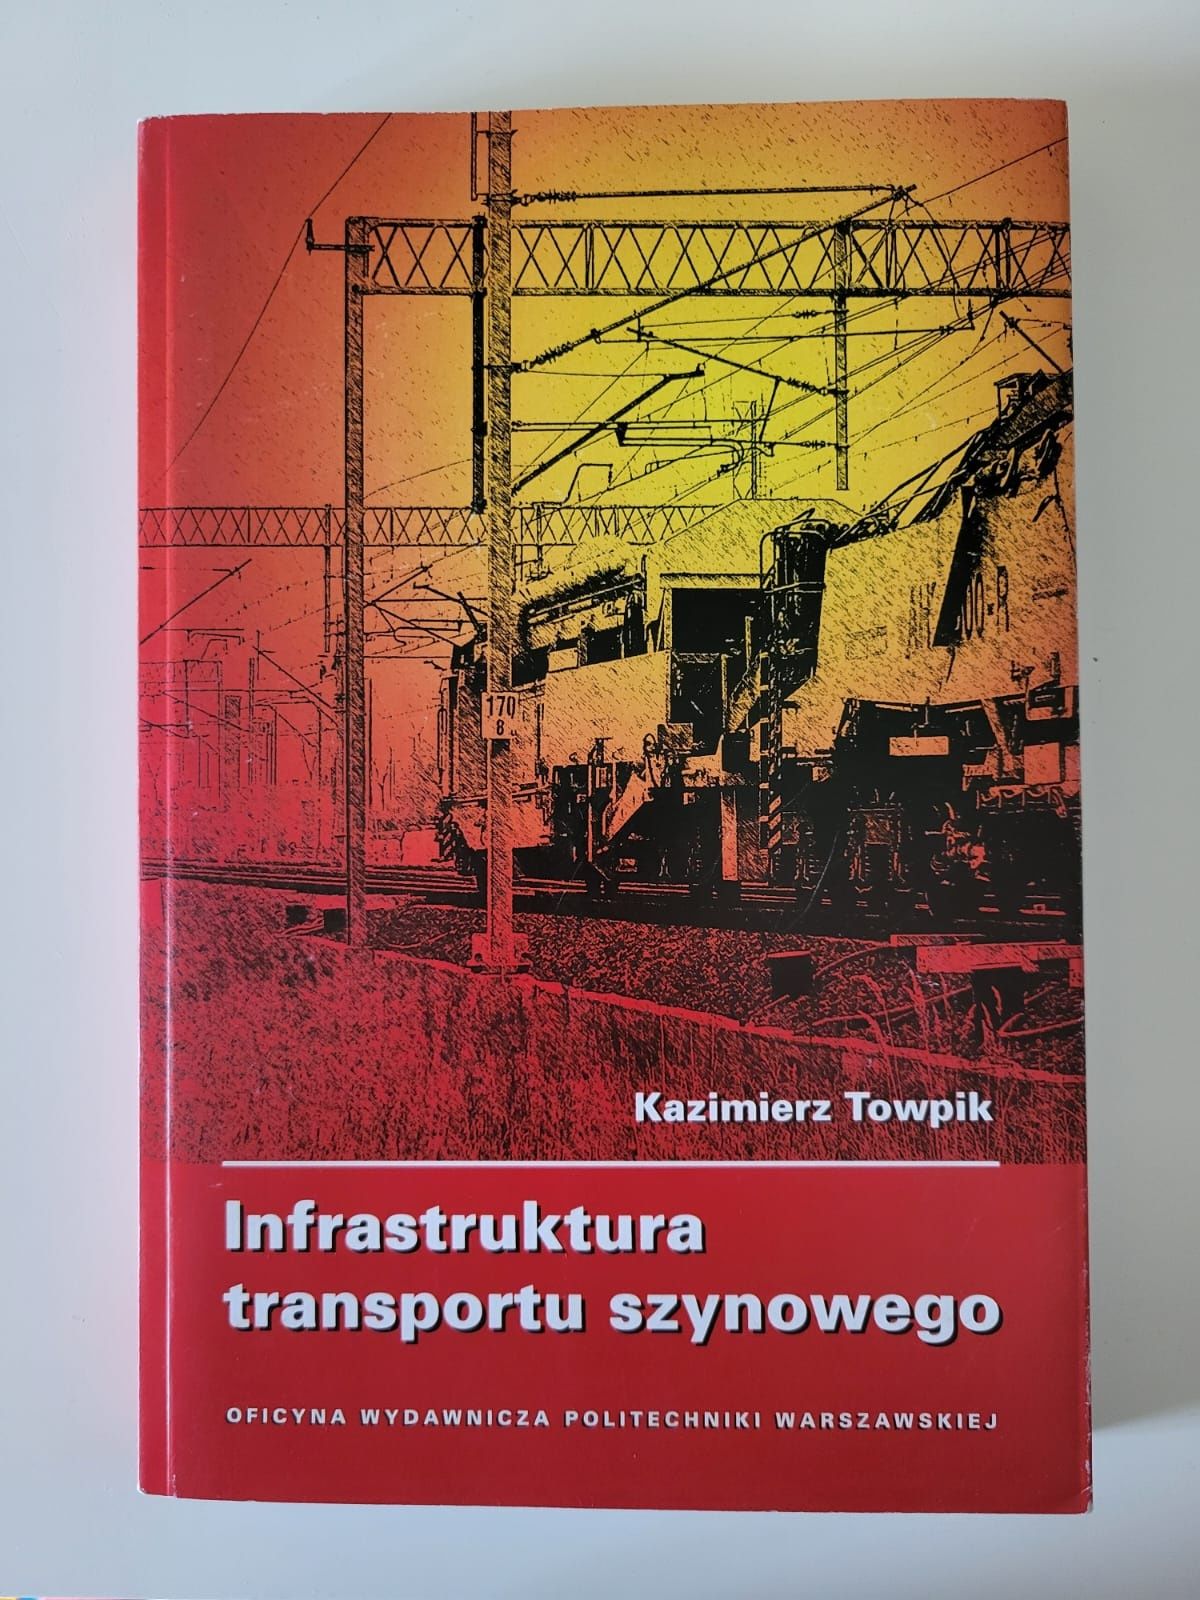 TOWPIK Infrastruktura transportu szynowego